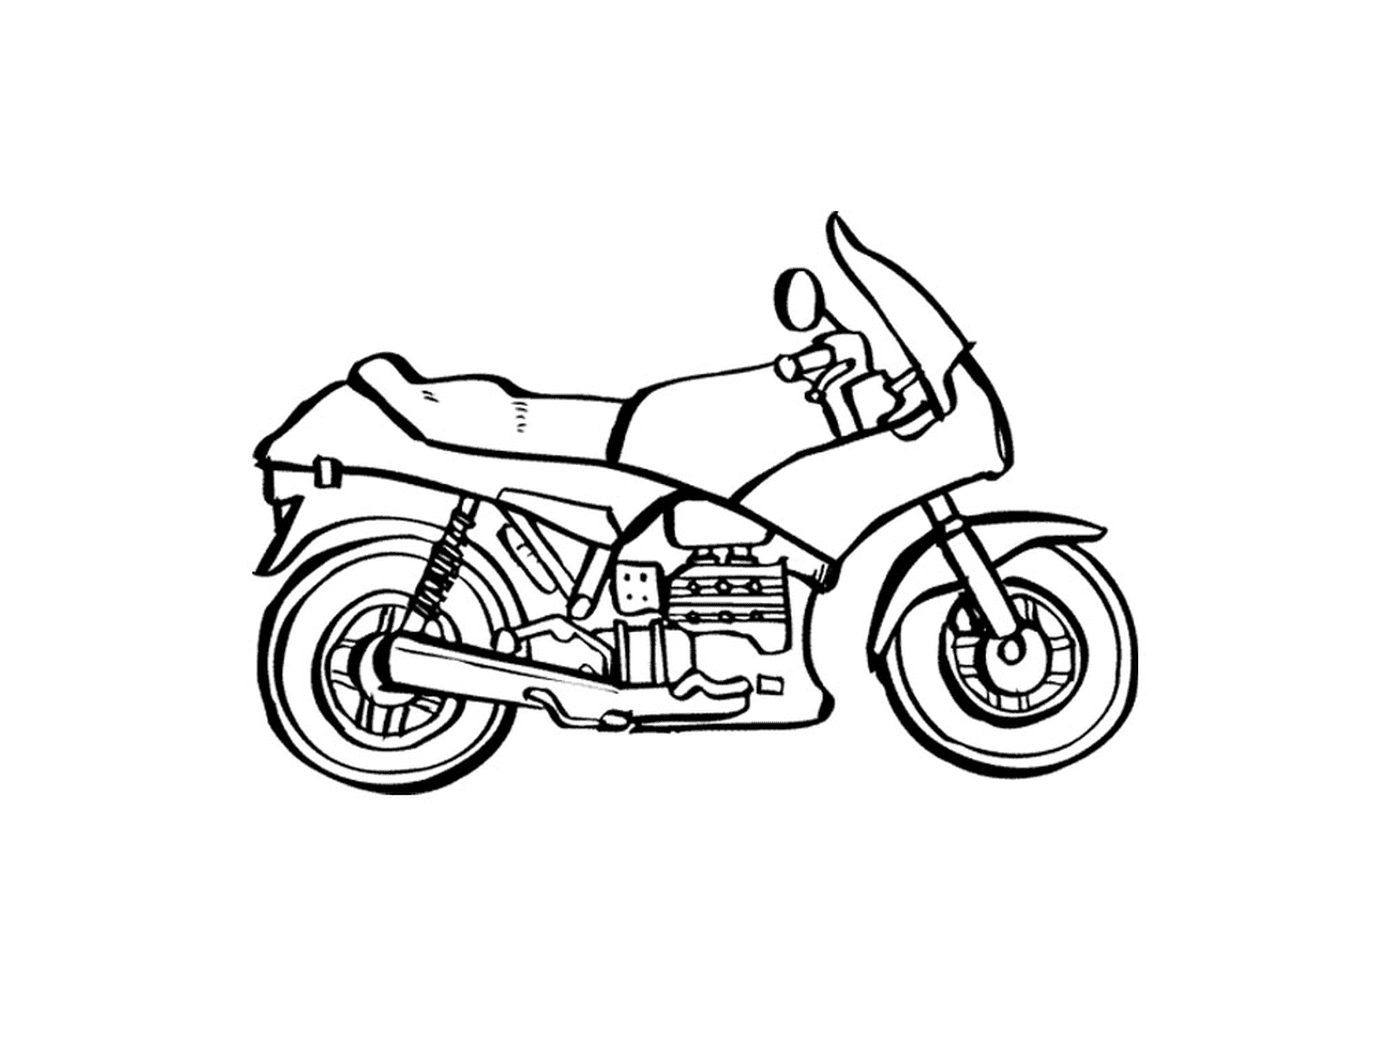  Motocicleta número 35 